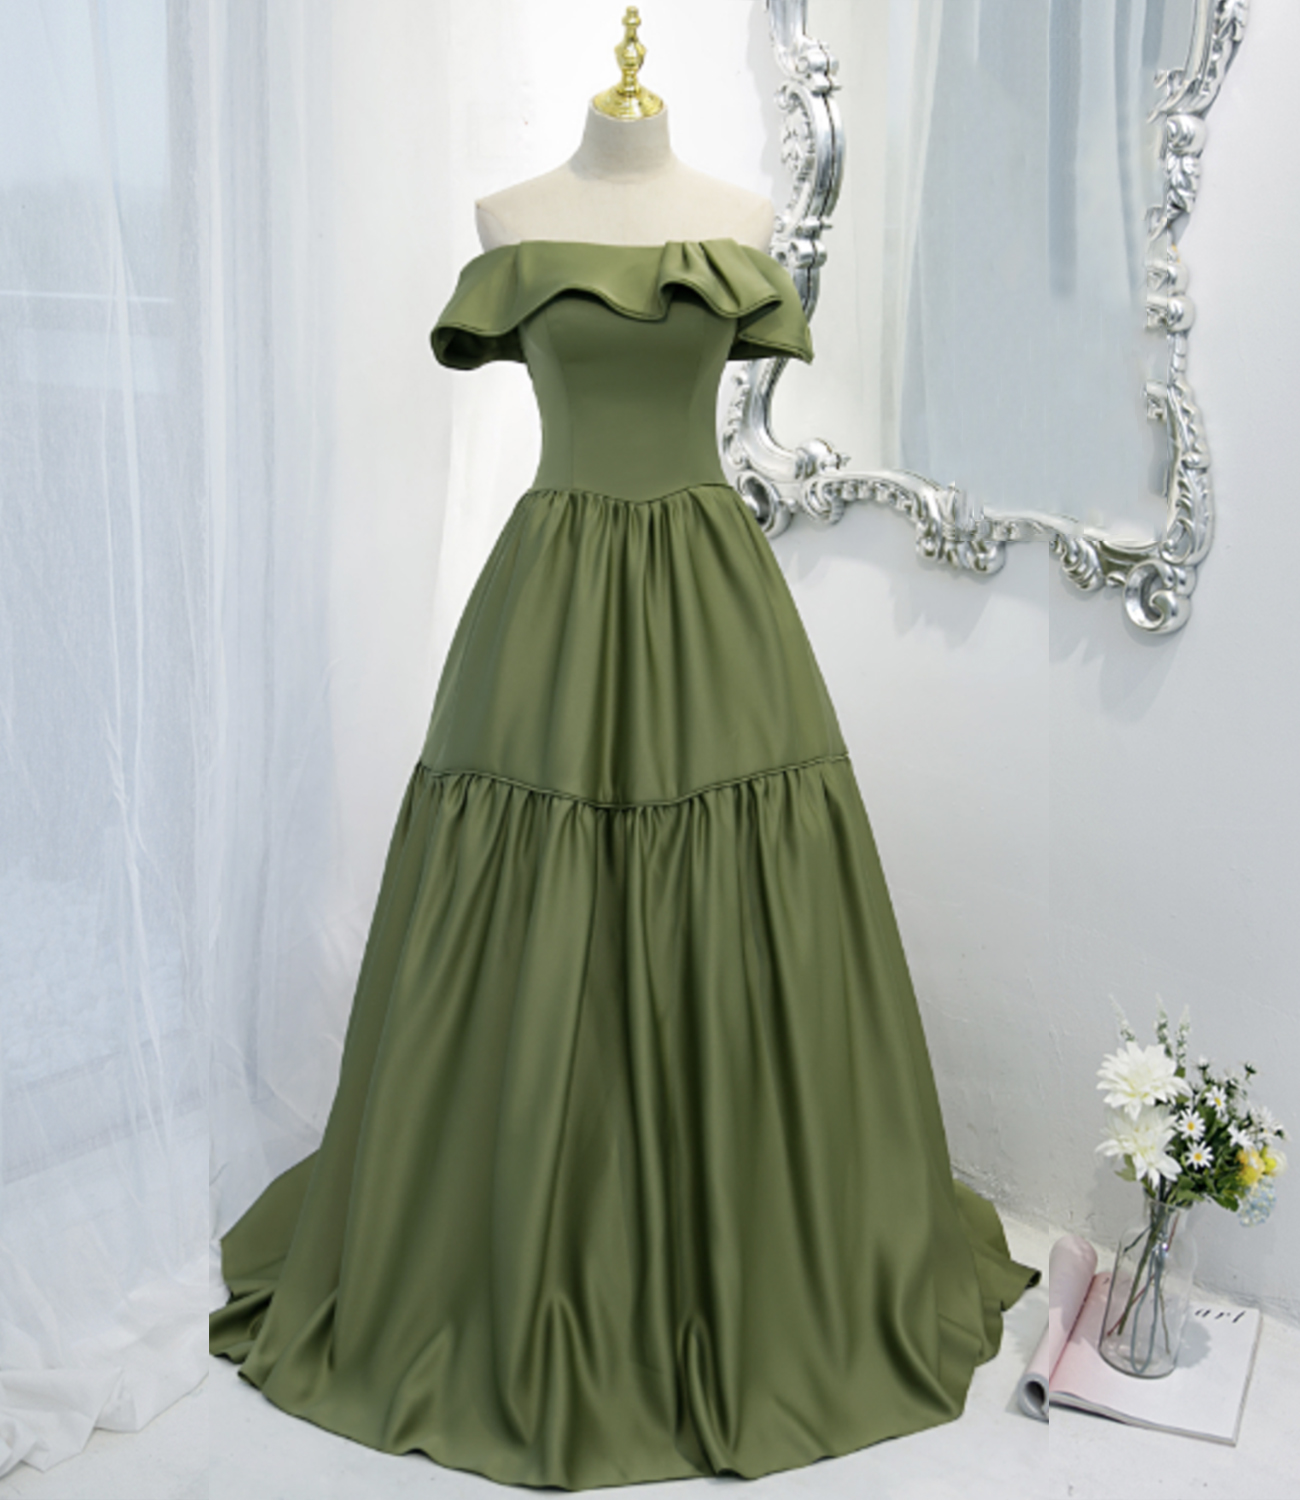 Green satin long A line prom dress green evening dress nv544